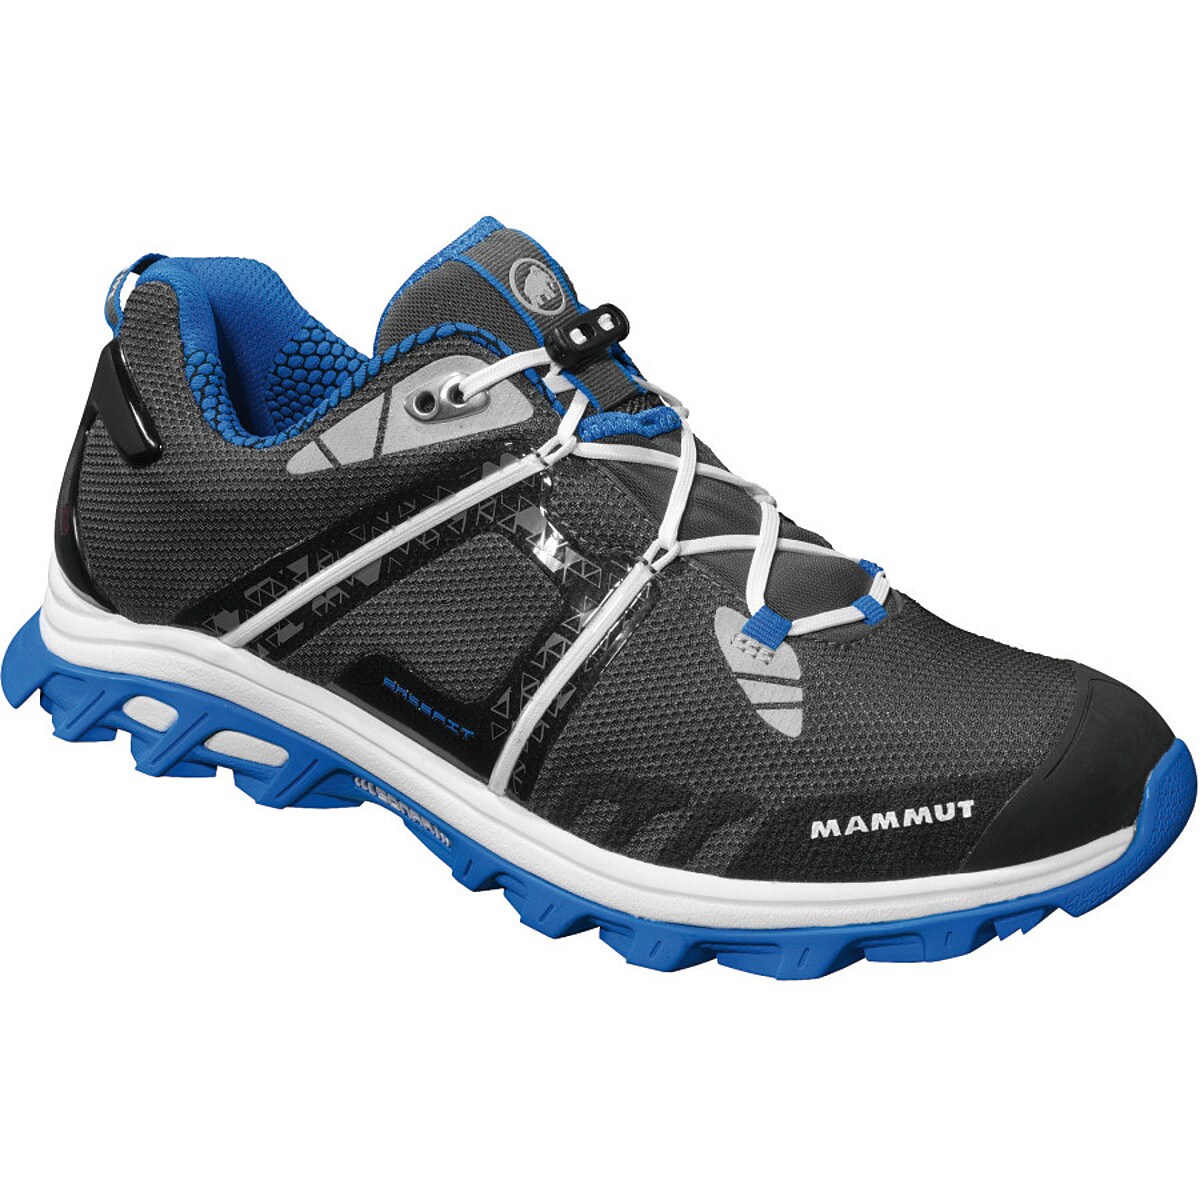 Mammut MTR 201 Trail Running Shoe - Women's - Footwear